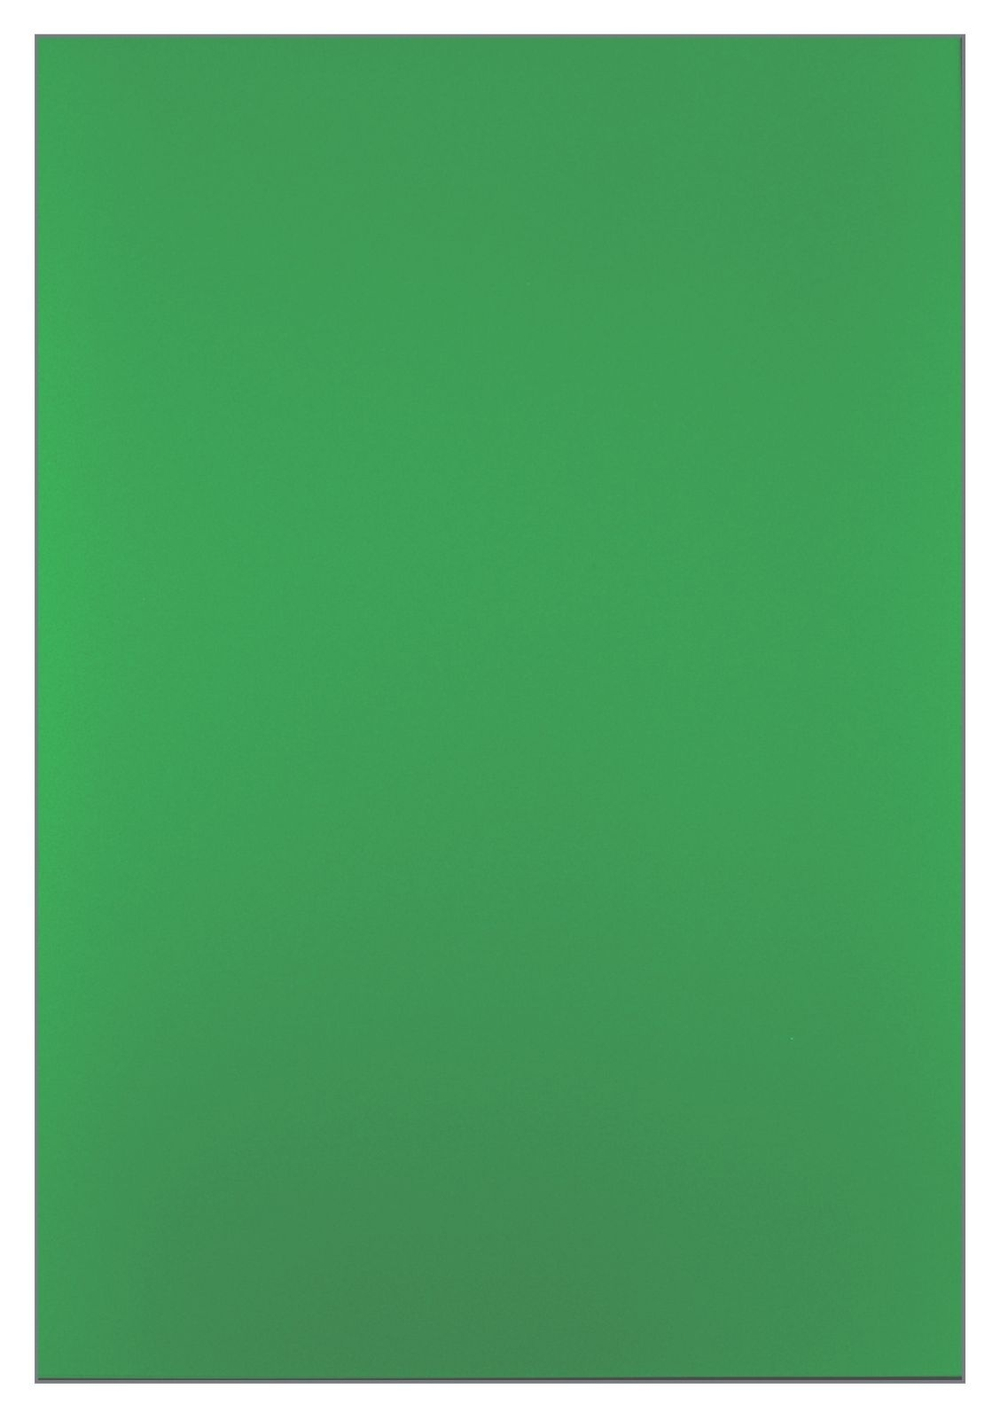 Обложка А4 РеалИСТ "PVC" 400мкм, зелёный непрозрачный пластик, 50л.